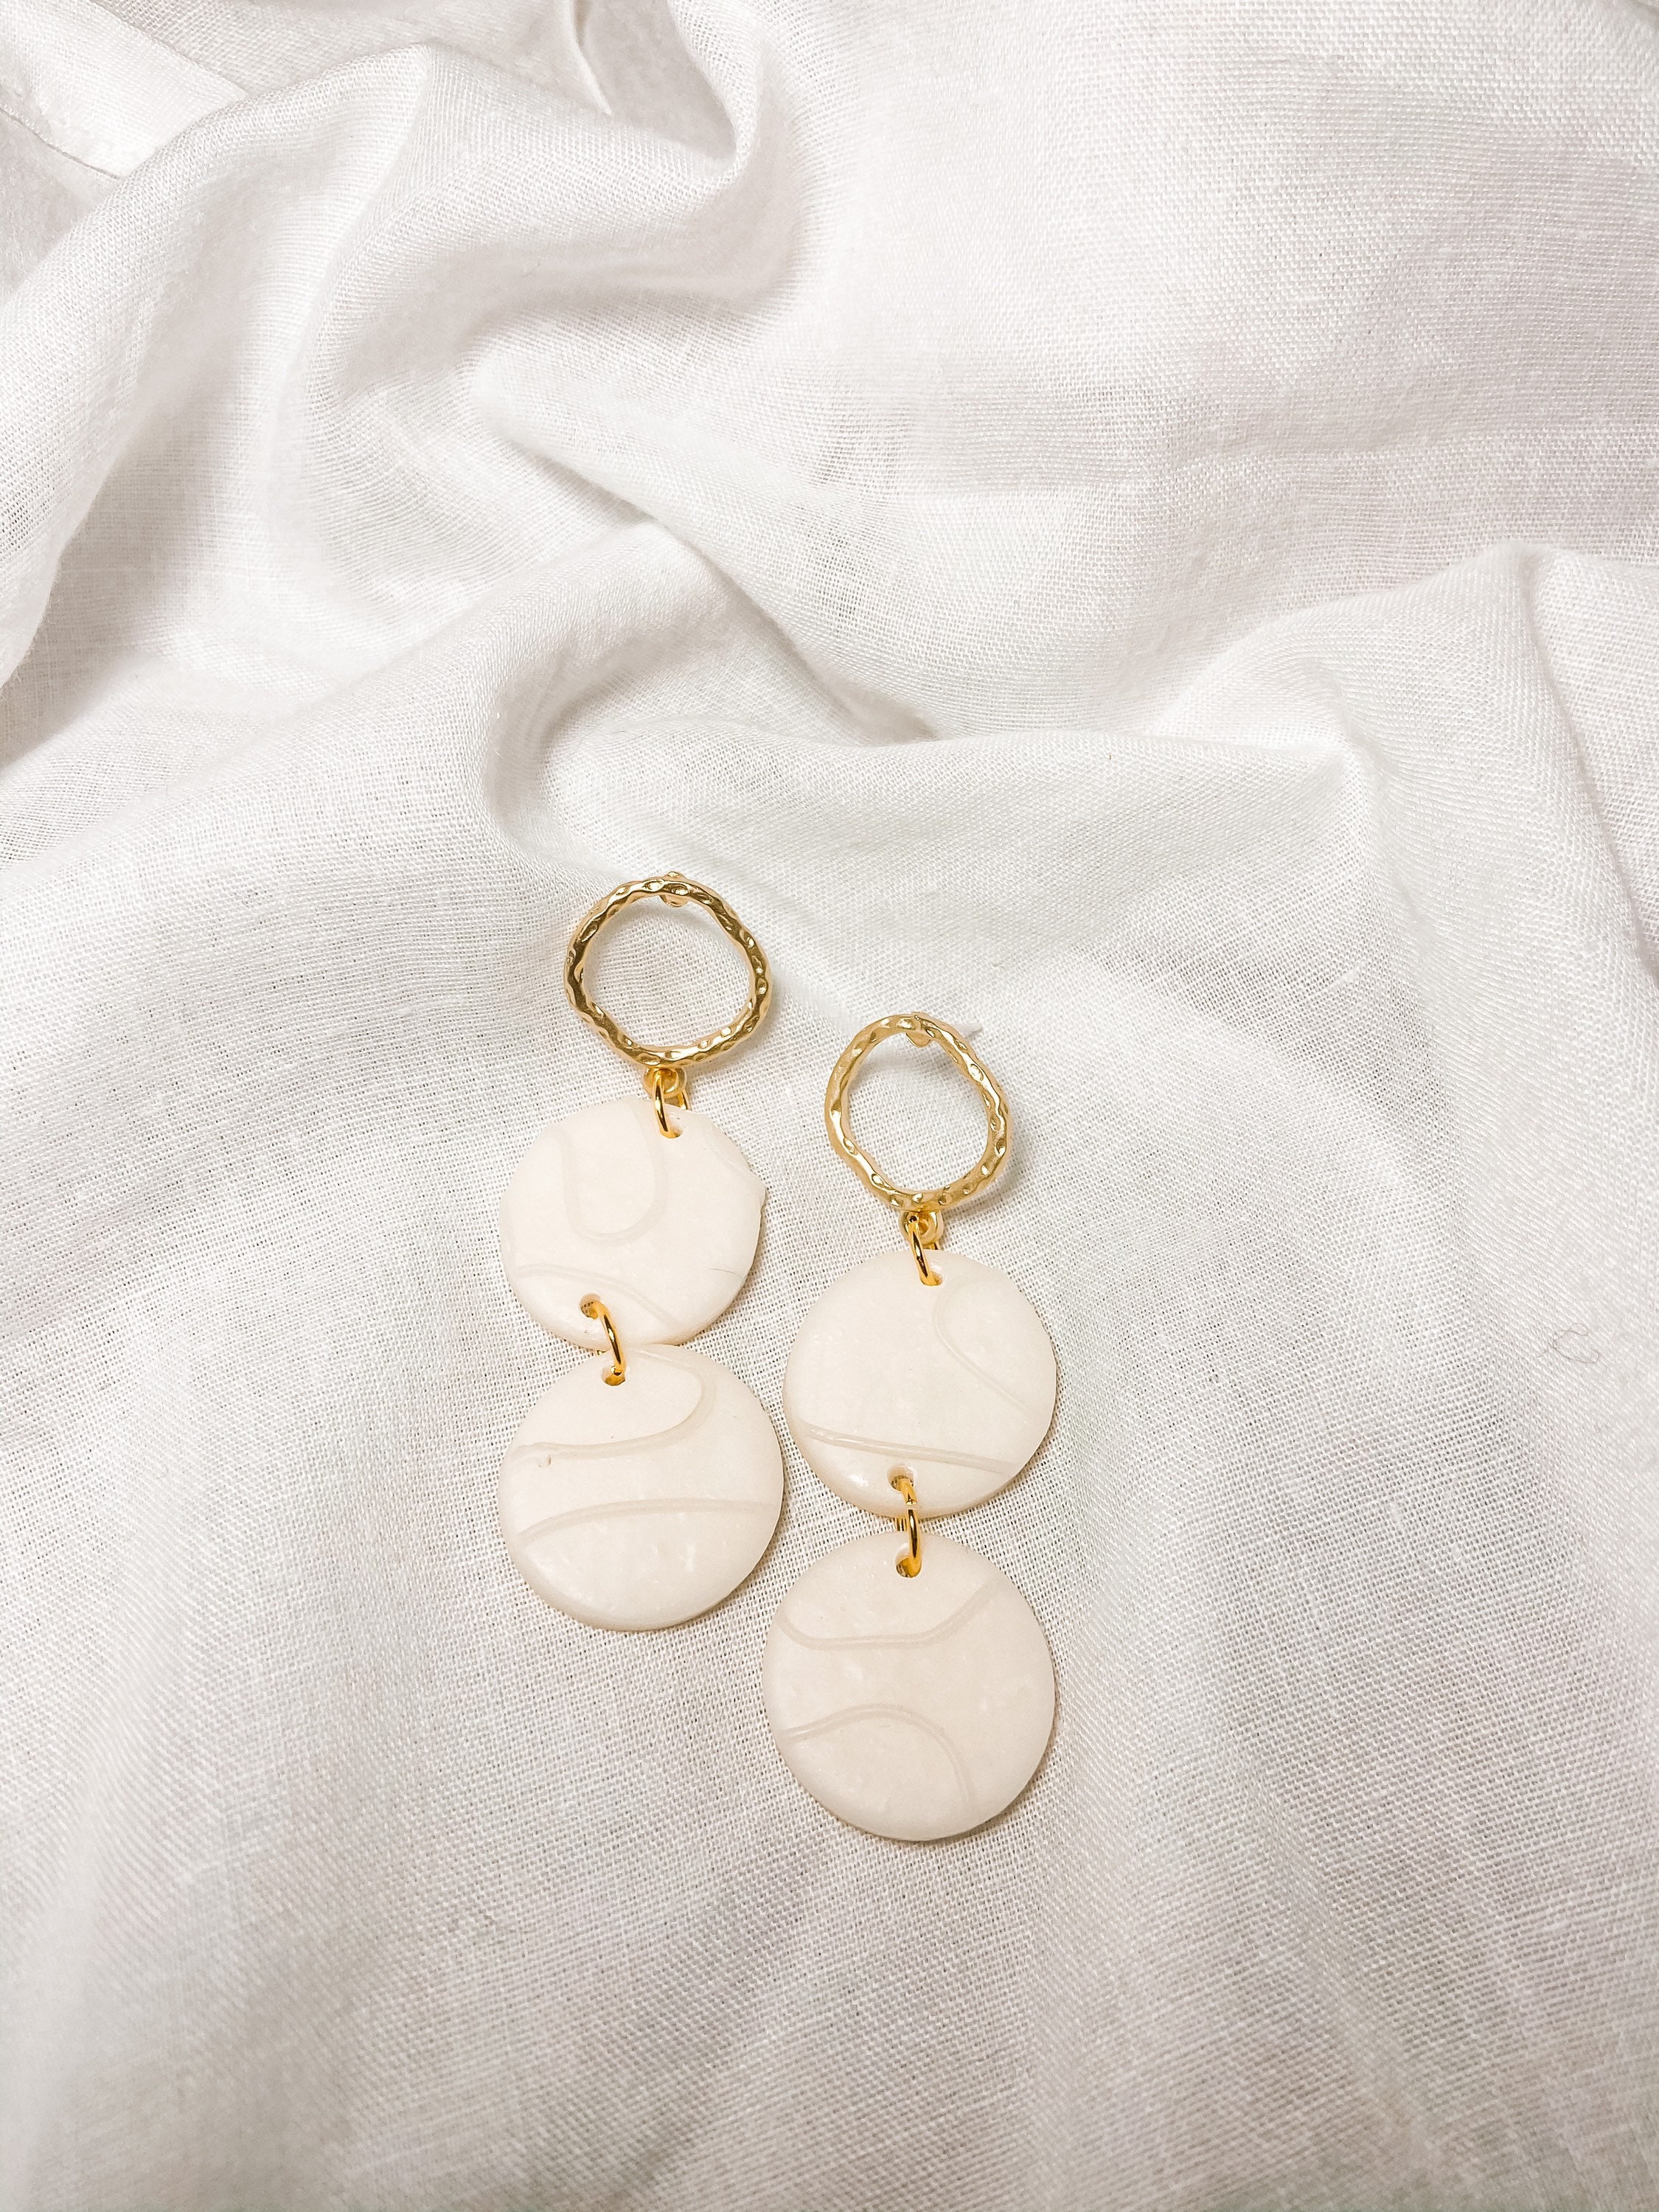 Polymer clay earrings// white translucent Delilah earrings | Etsy